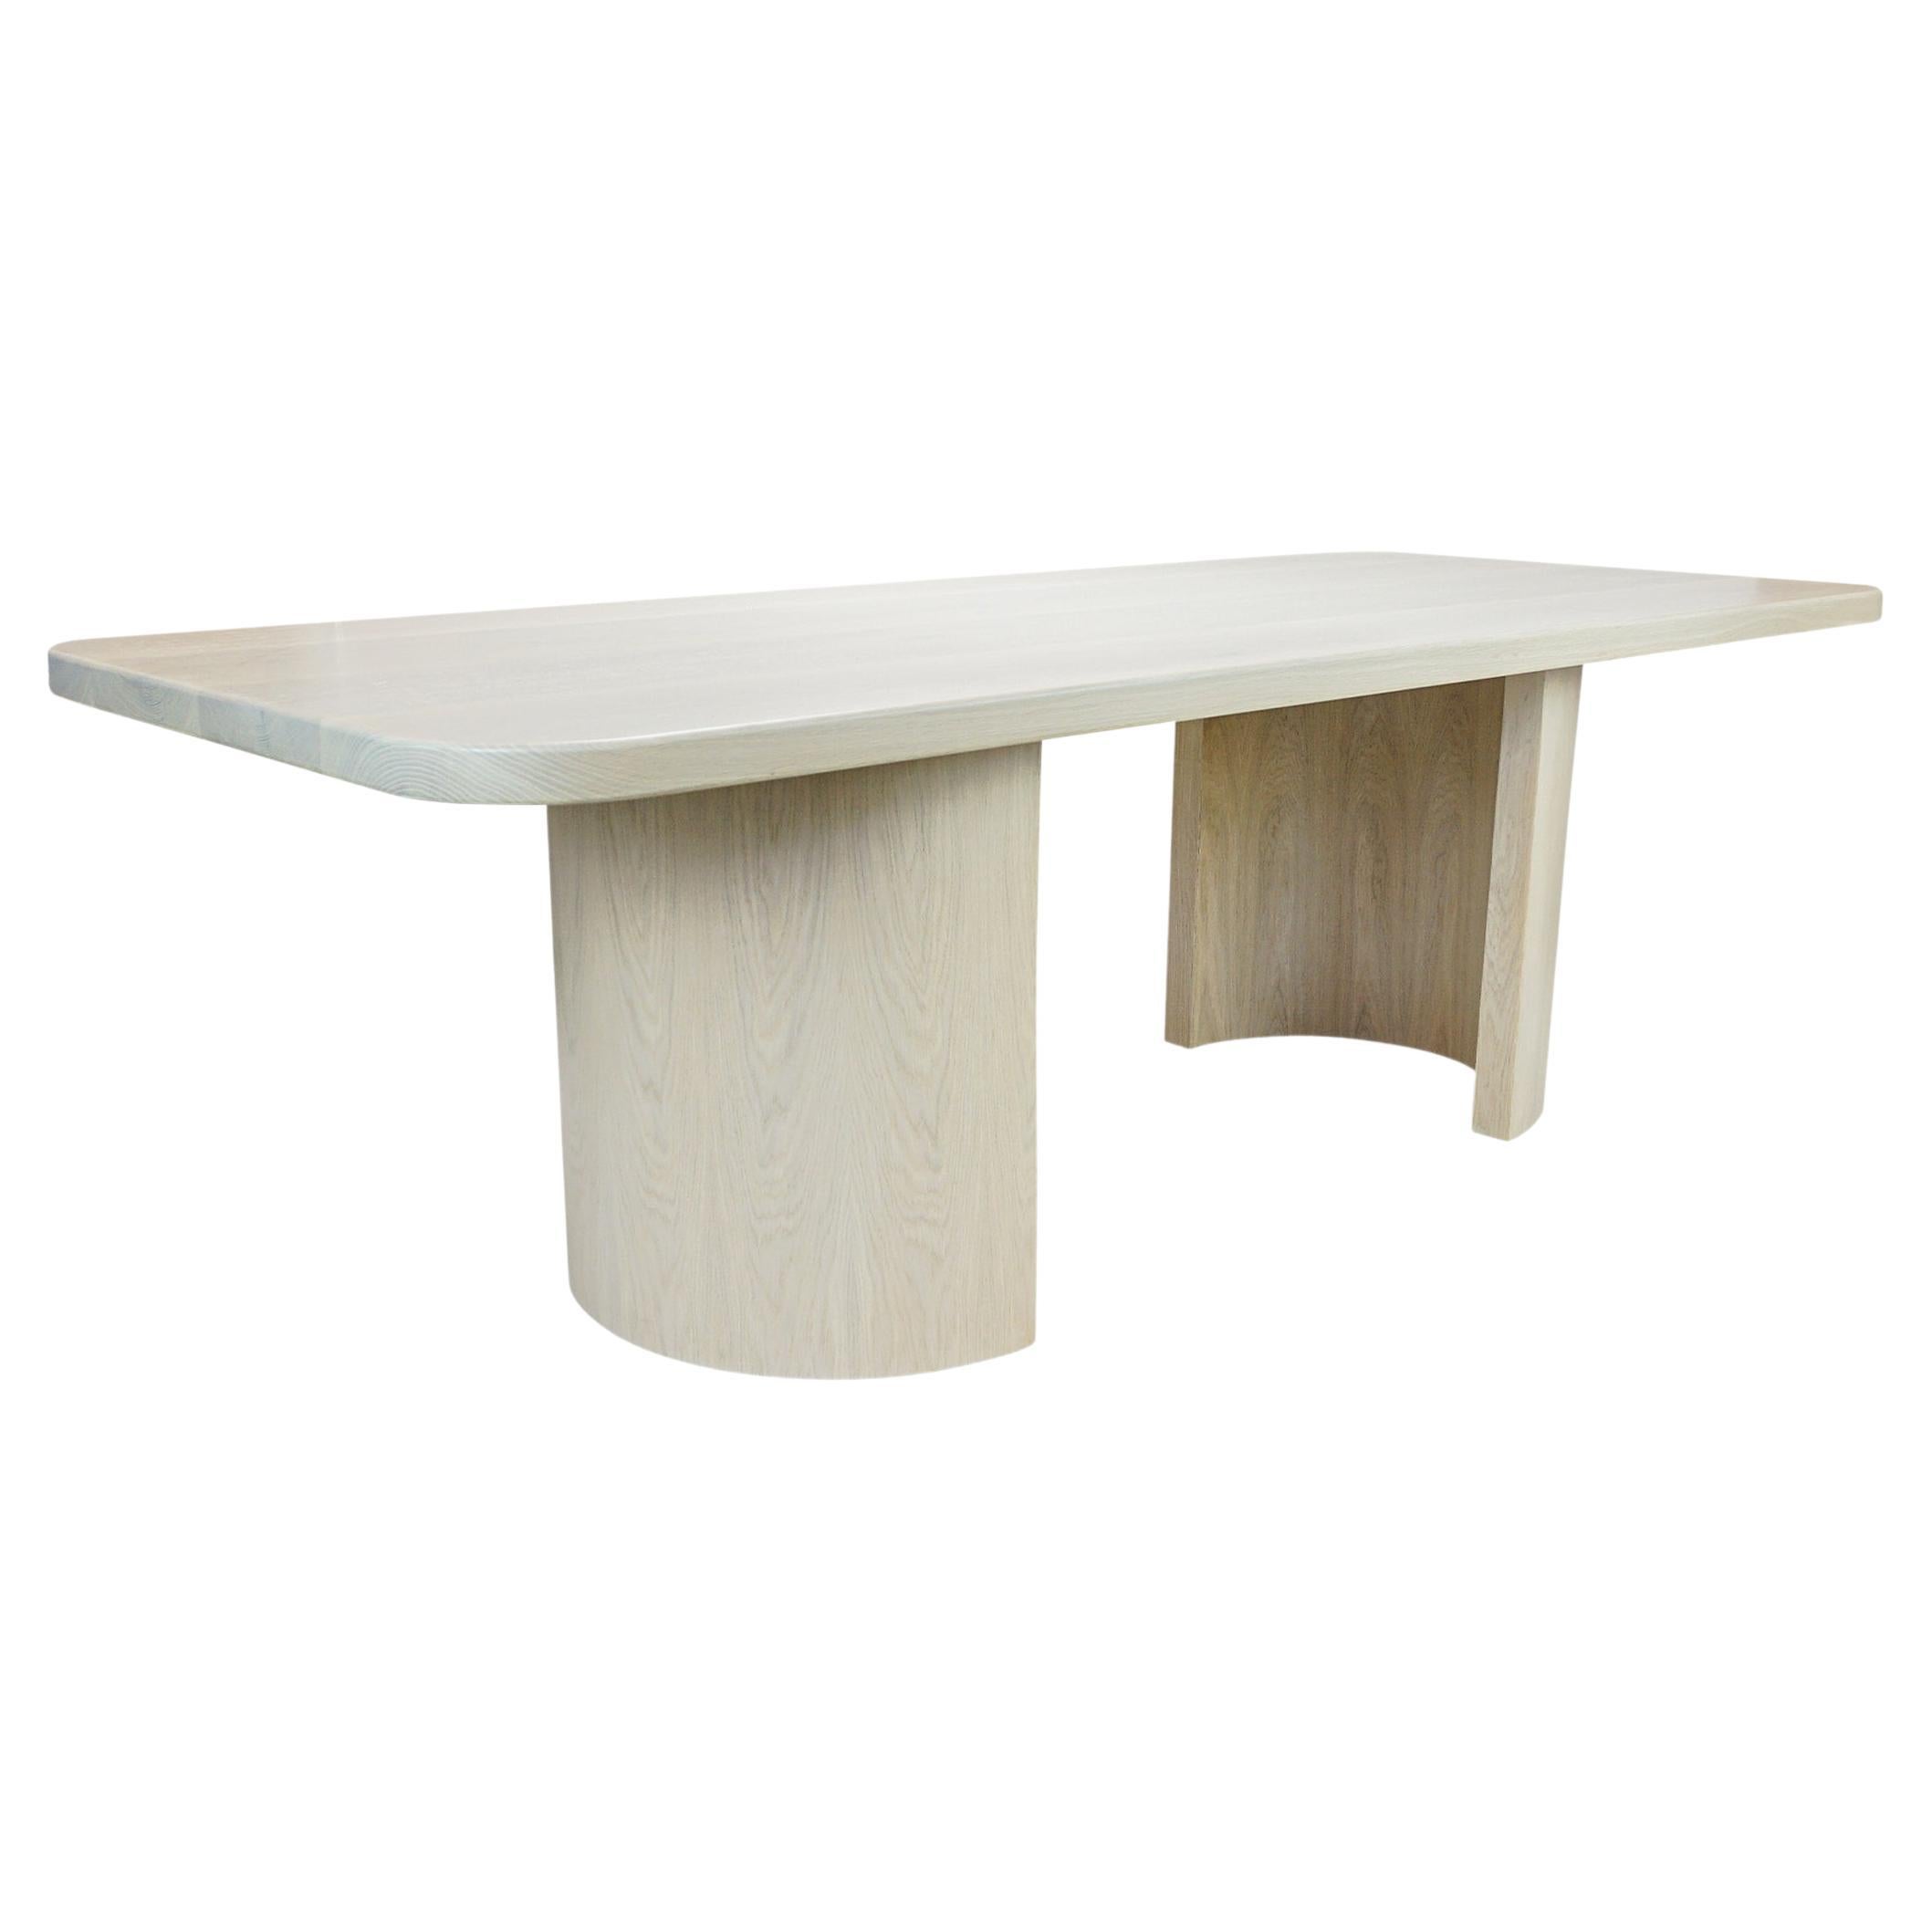 Table de salle à manger moderne en chêne blanc avec une forme organique. La finition illustrée est le chêne blanc massif cérusé / blanchi. Demandez-nous des informations sur la personnalisation.

Ensemble : 96 